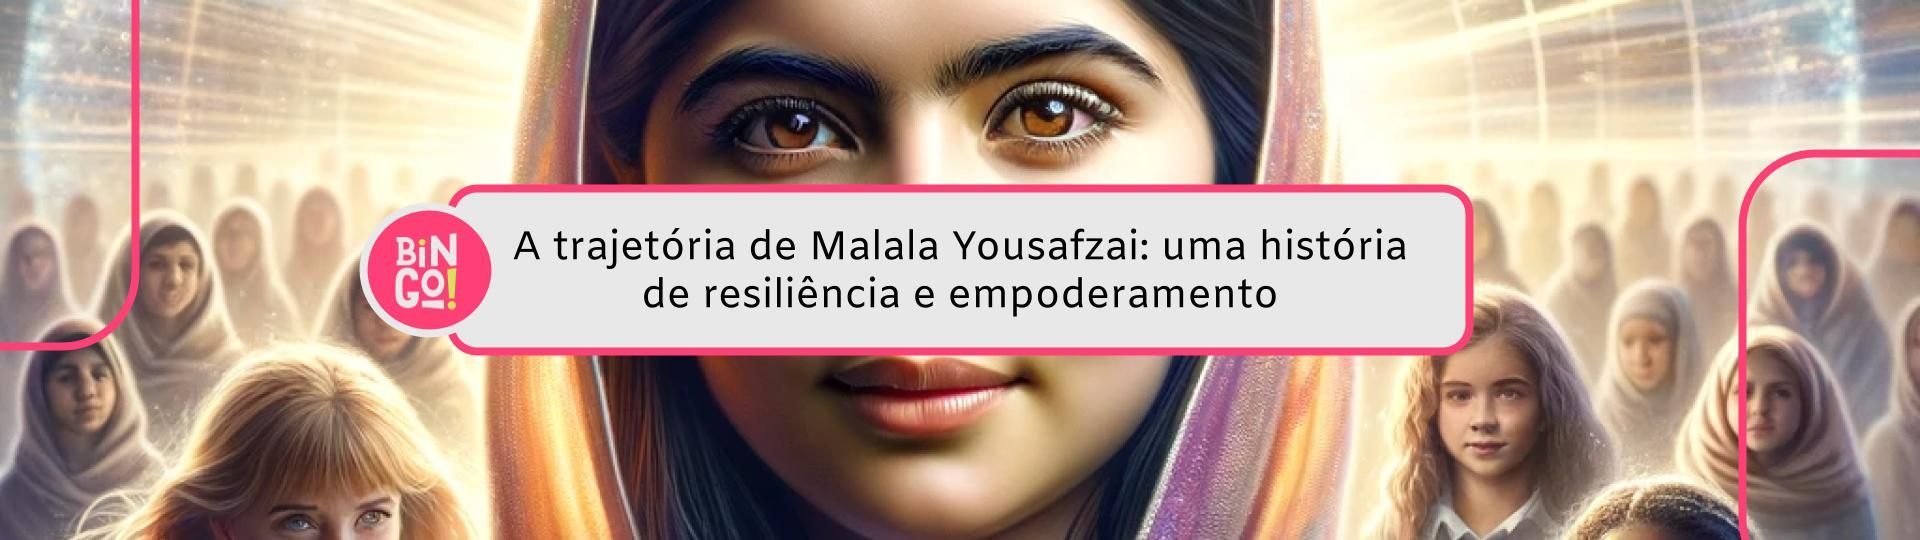 a-trajetoria-de-malala-yousafzai-uma-historia-de-resiliencia-e-empoderamento